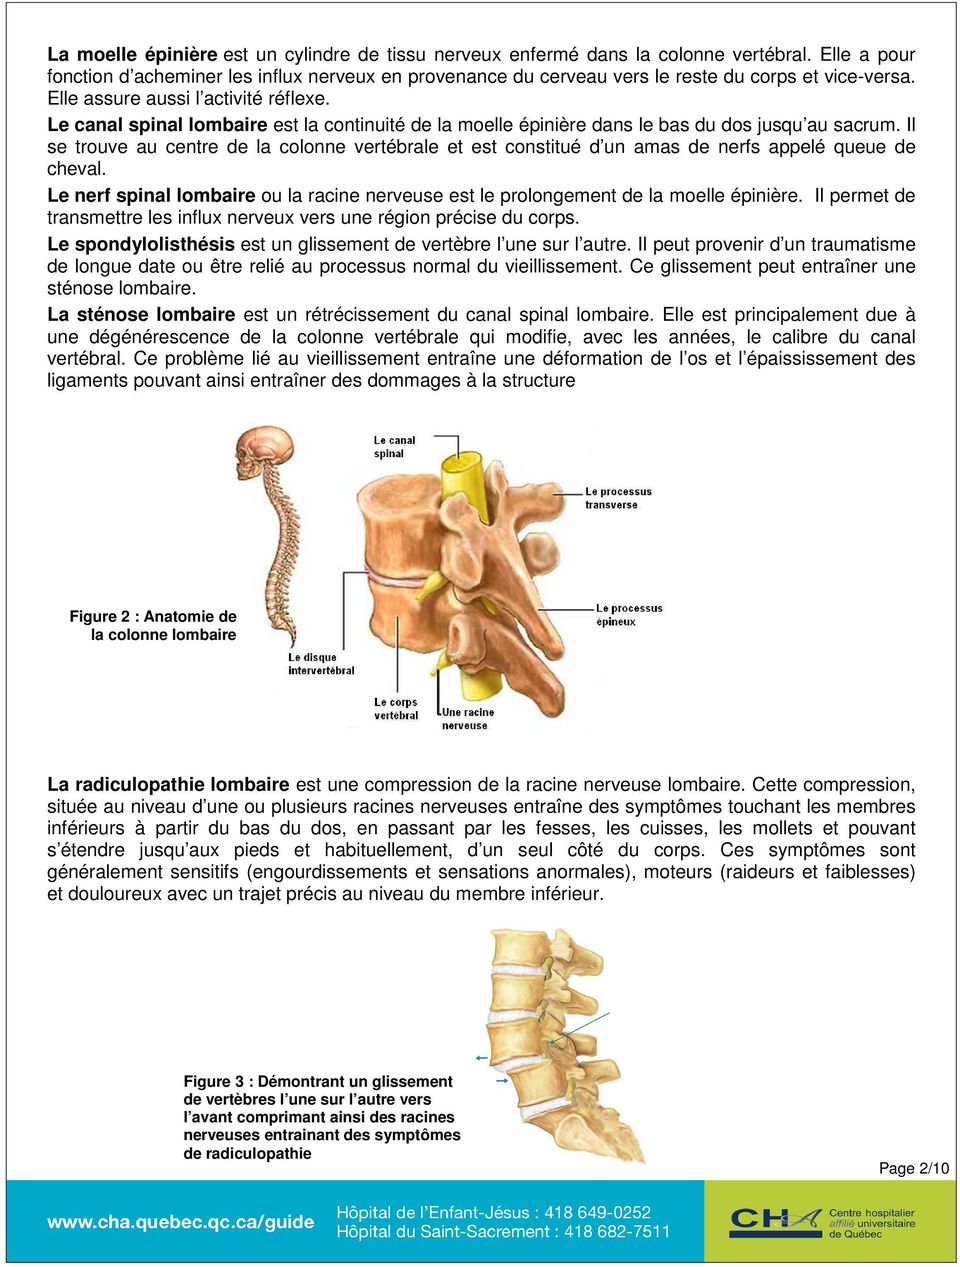 Le canal spinal lombaire est la continuité de la moelle épinière dans le bas du dos jusqu au sacrum.